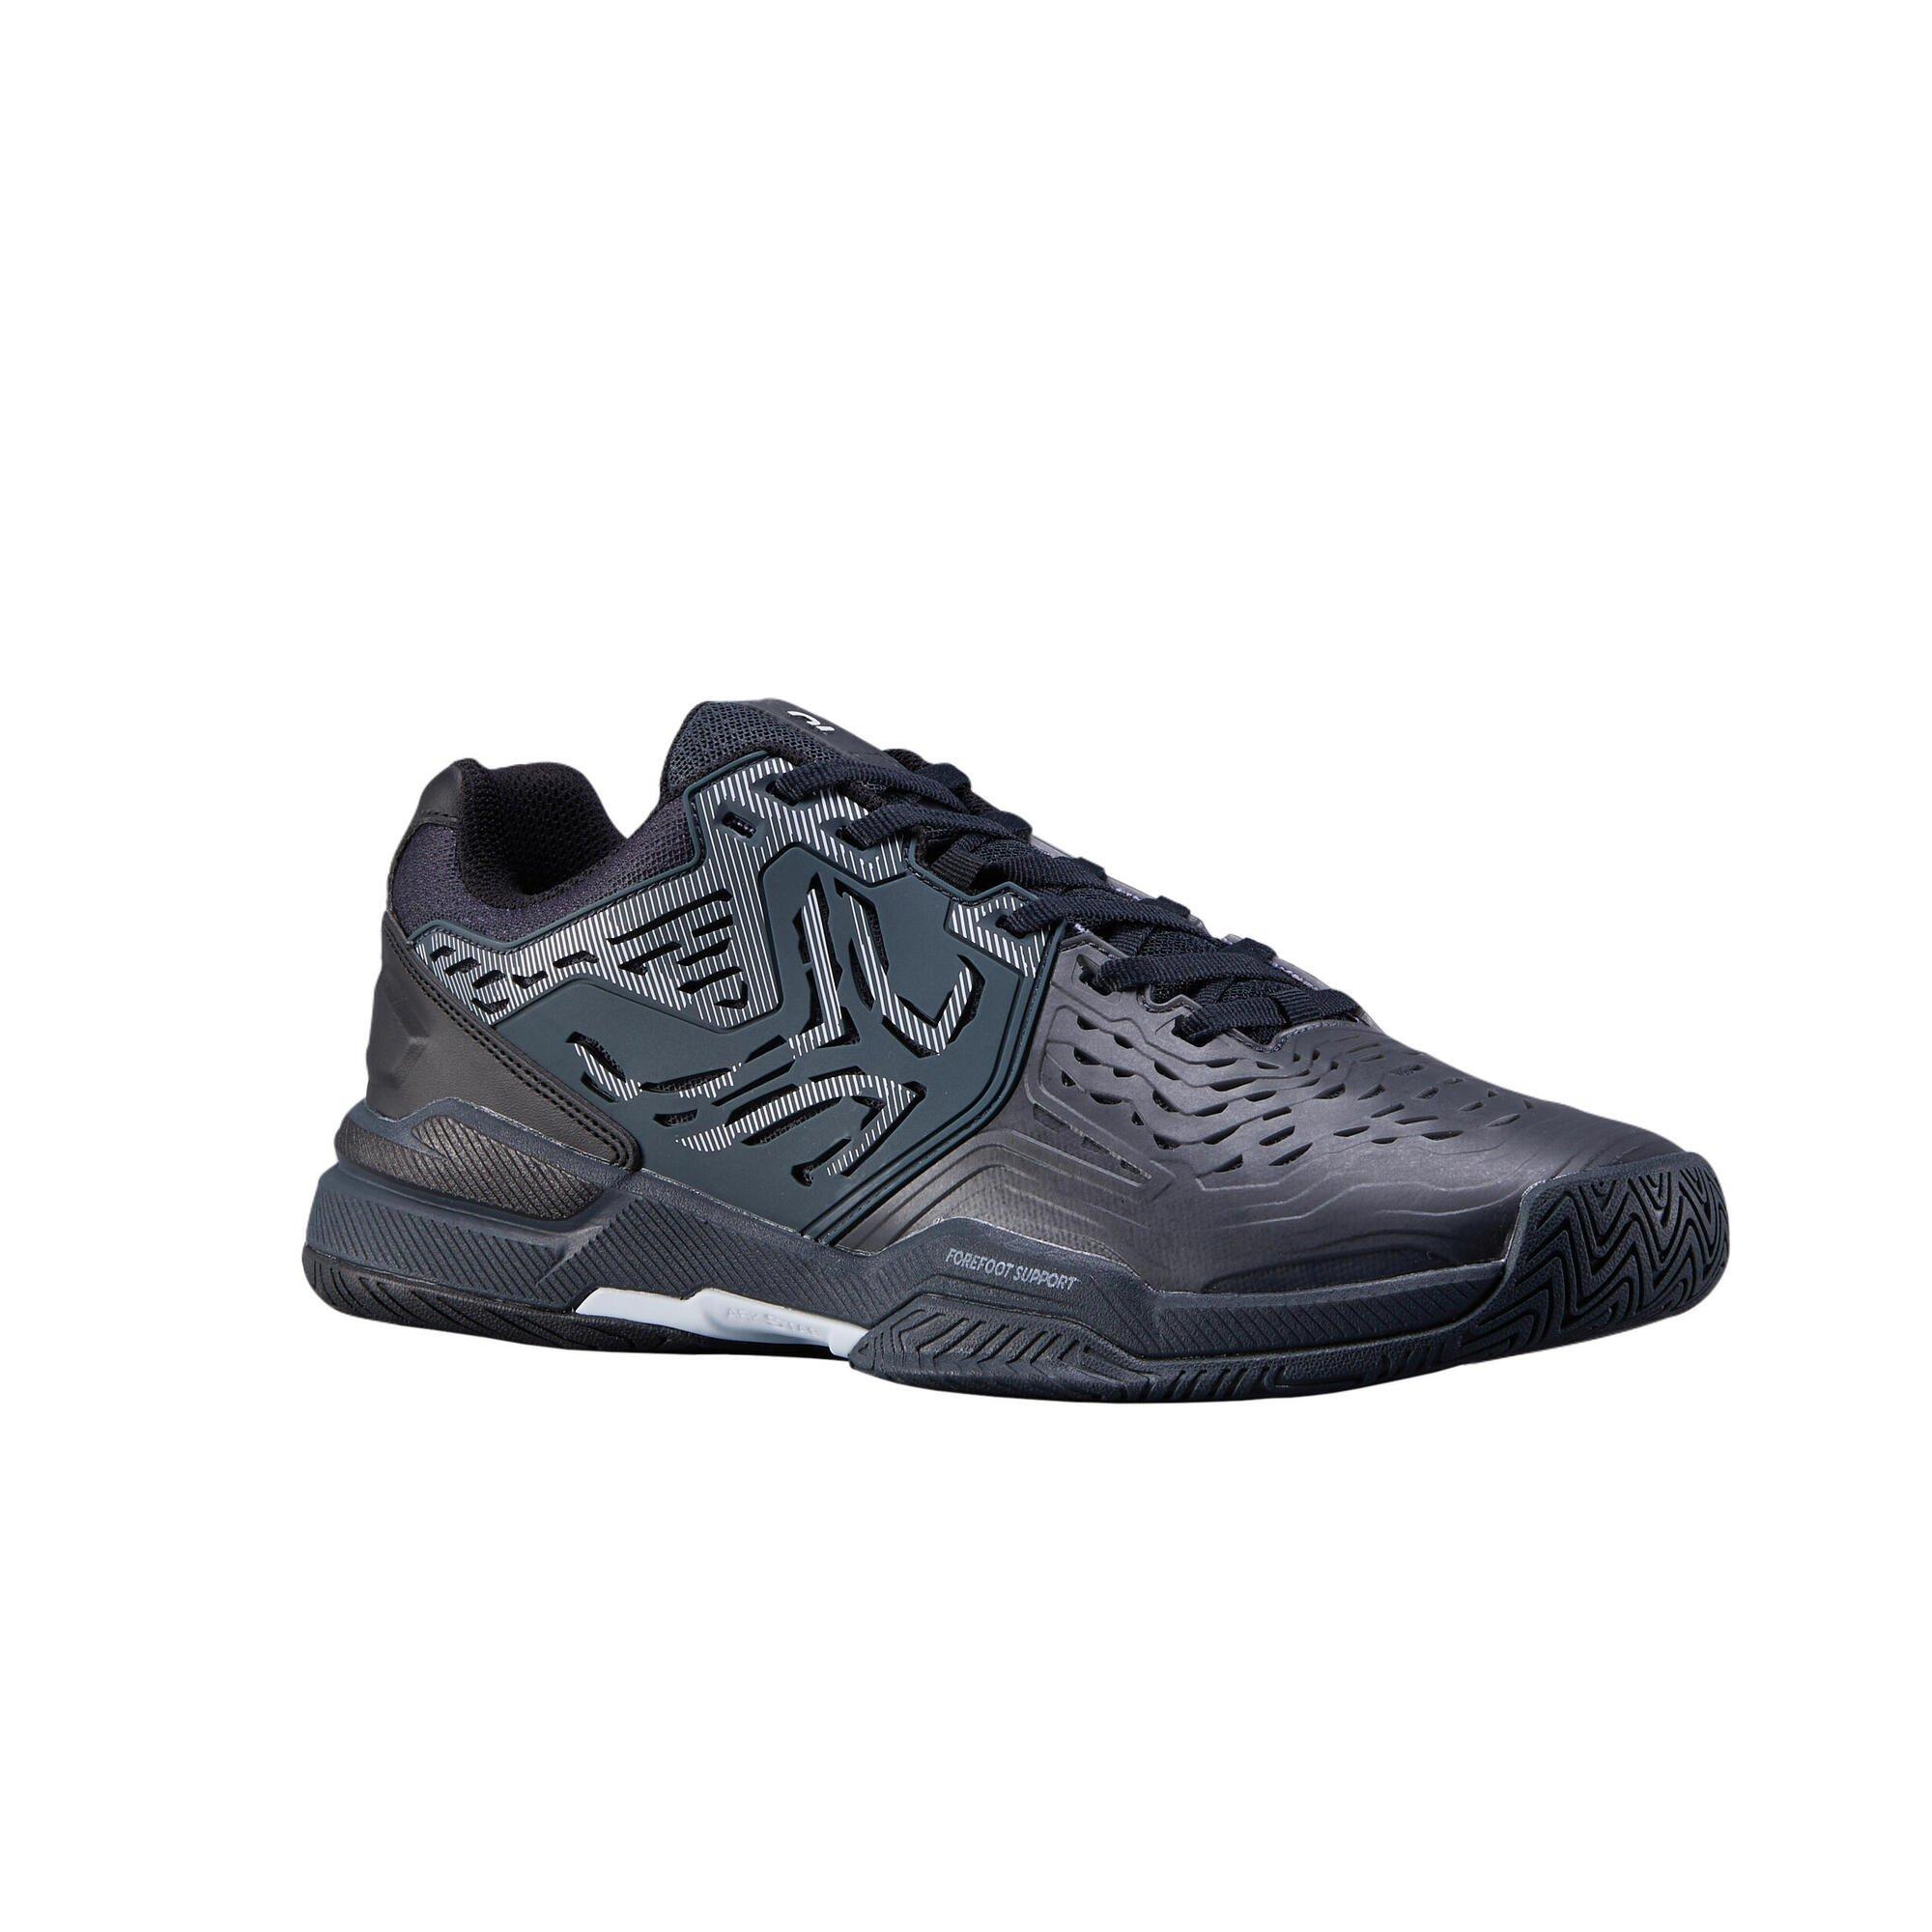 Спортивные кроссовки Decathlon Multi-Court Tennis Shoes Ts560 Artengo, серый